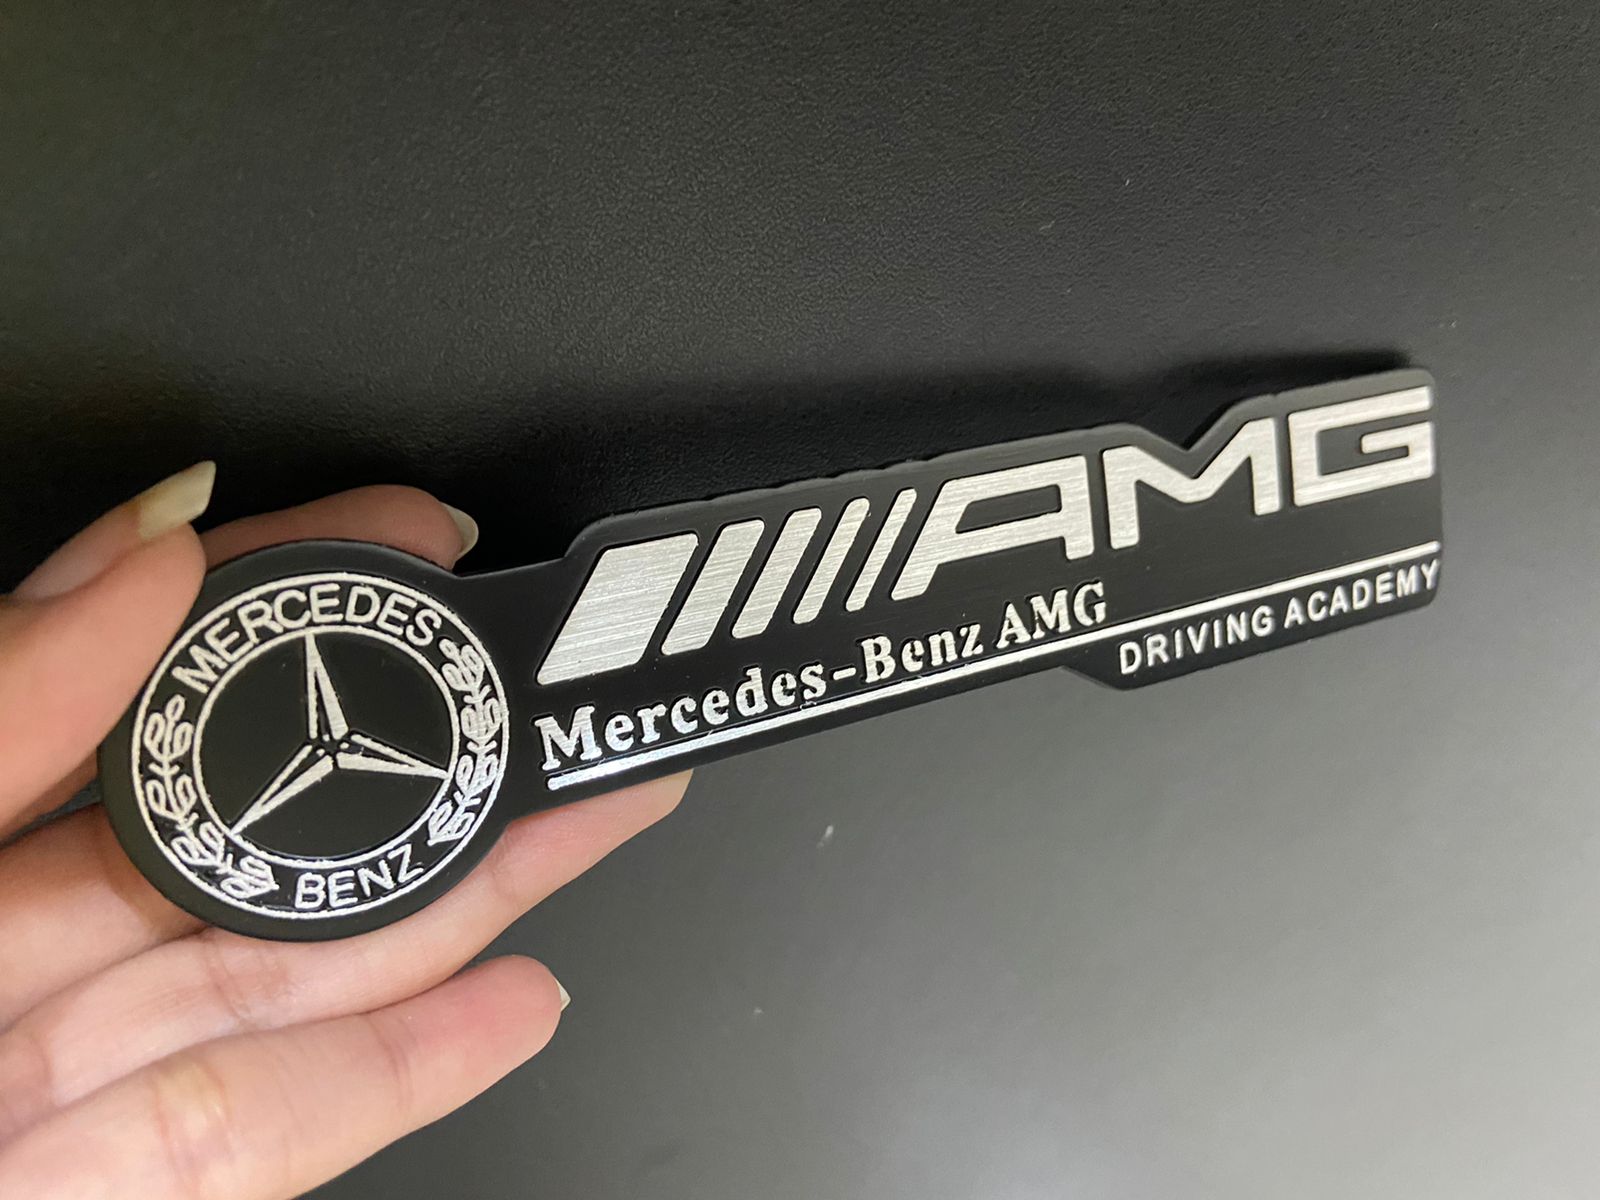 Black AMG Badge for Mercedes Benz Decal Emblem Car Sticker: Buy